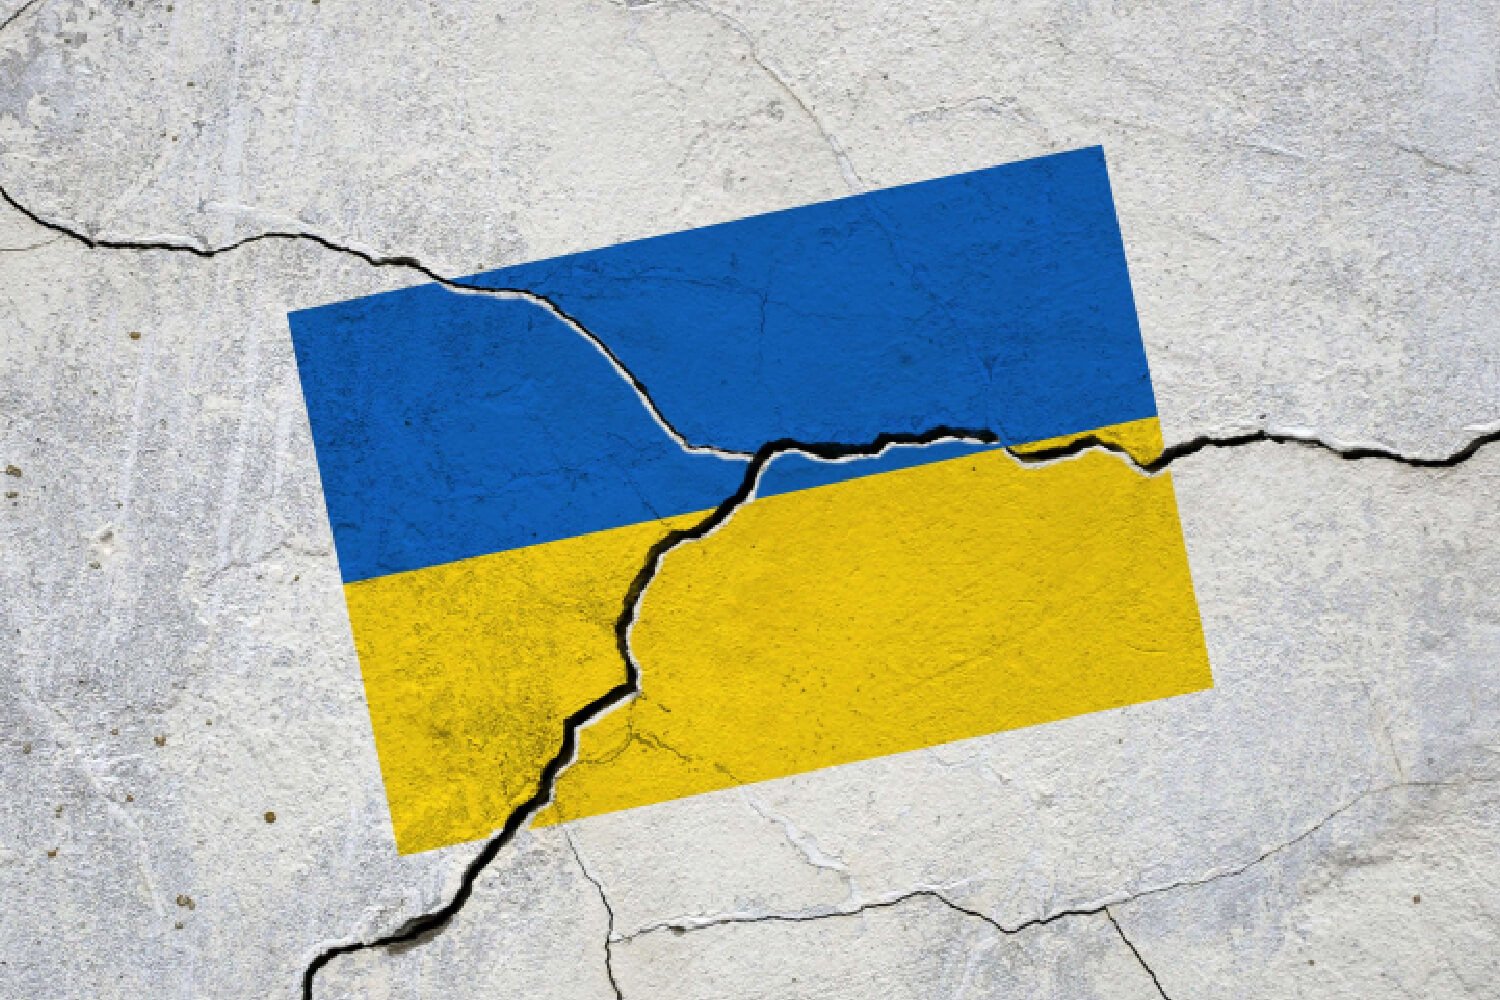 Πριν την κρίση στην Ουκρανία, το επιχειρείν «έδειχνε» παγκόσμια ανάκαμψη